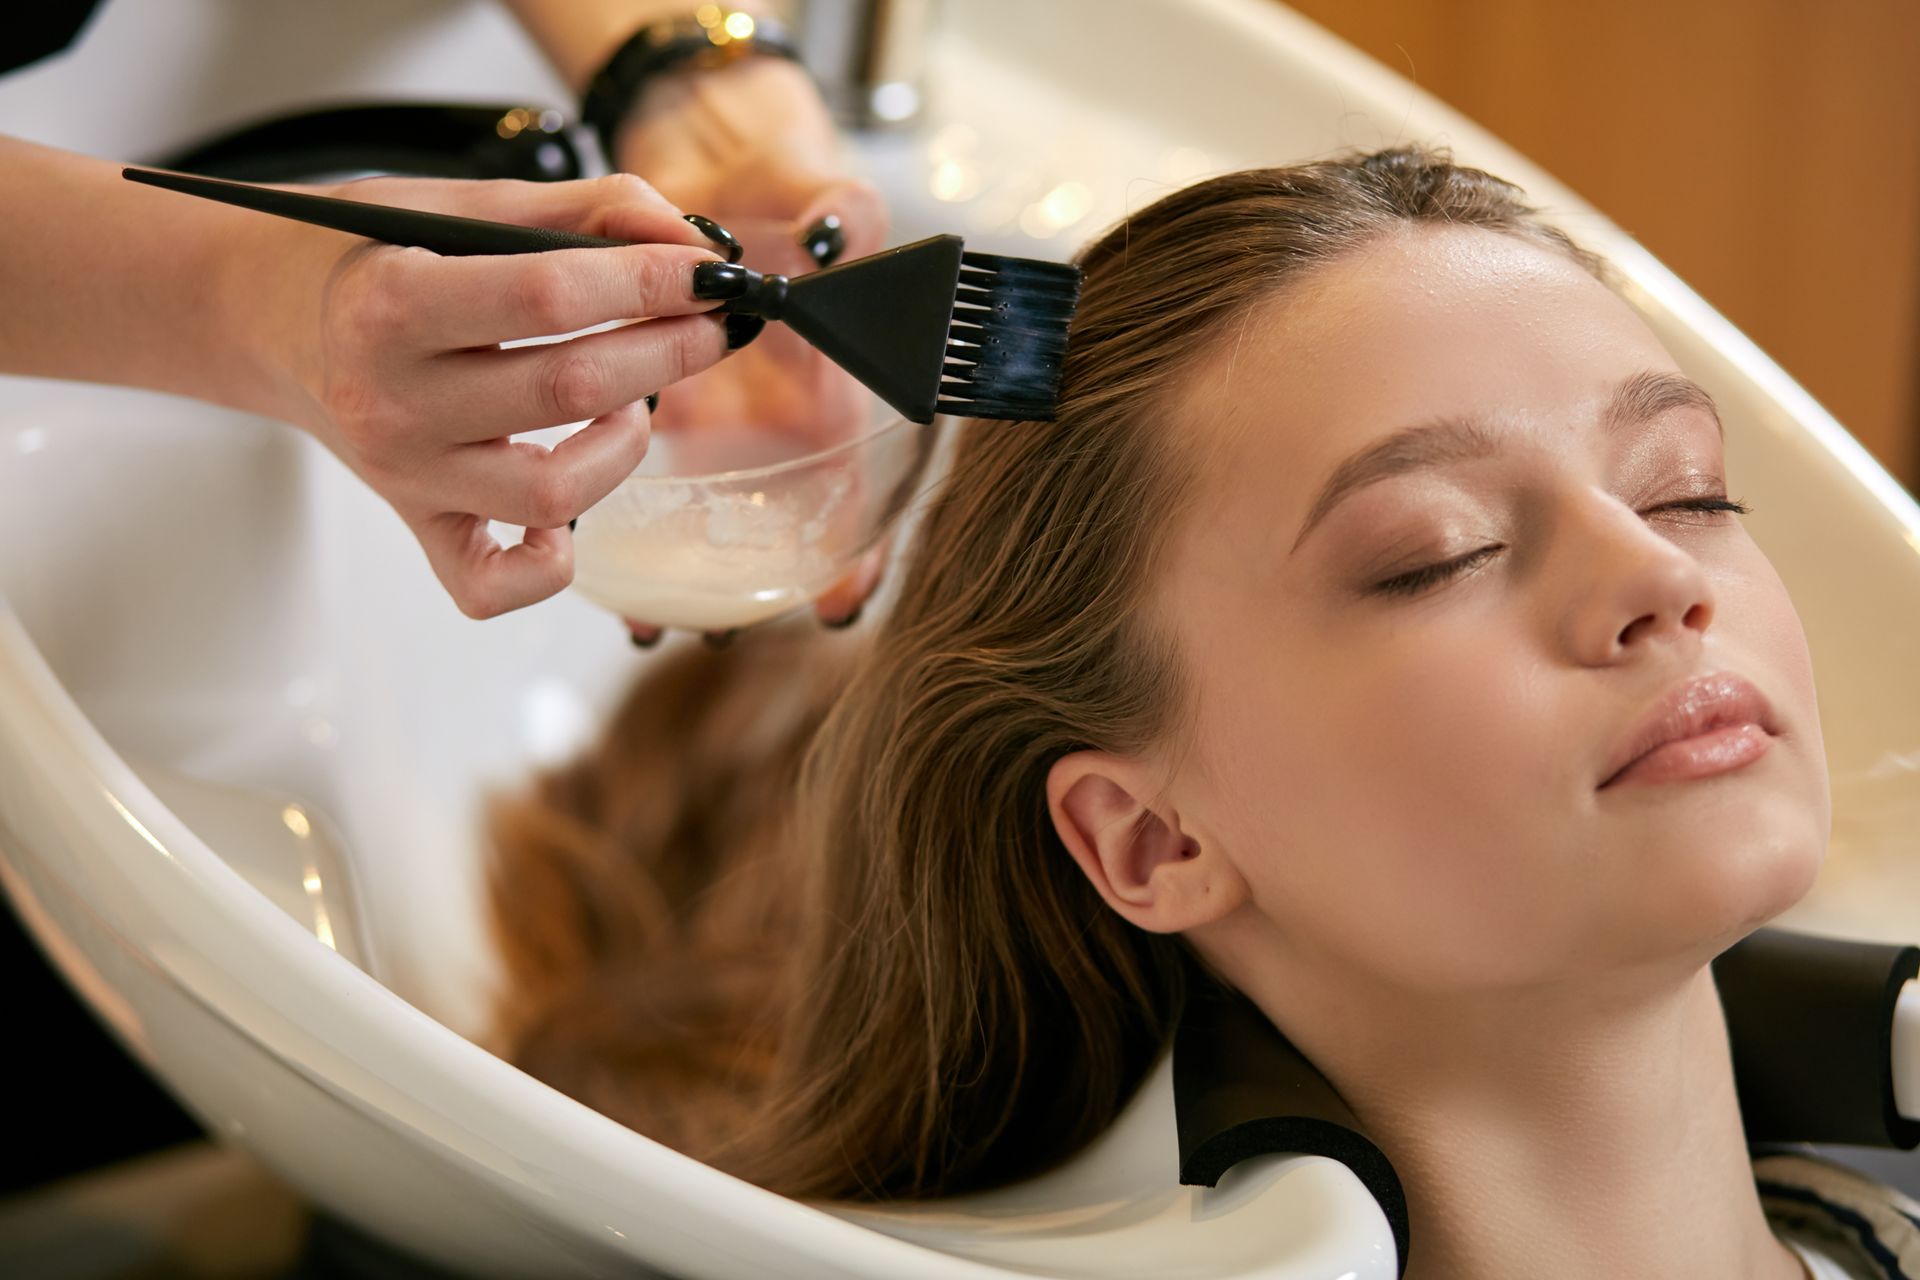 a woman is getting a hair treatment in a salon .